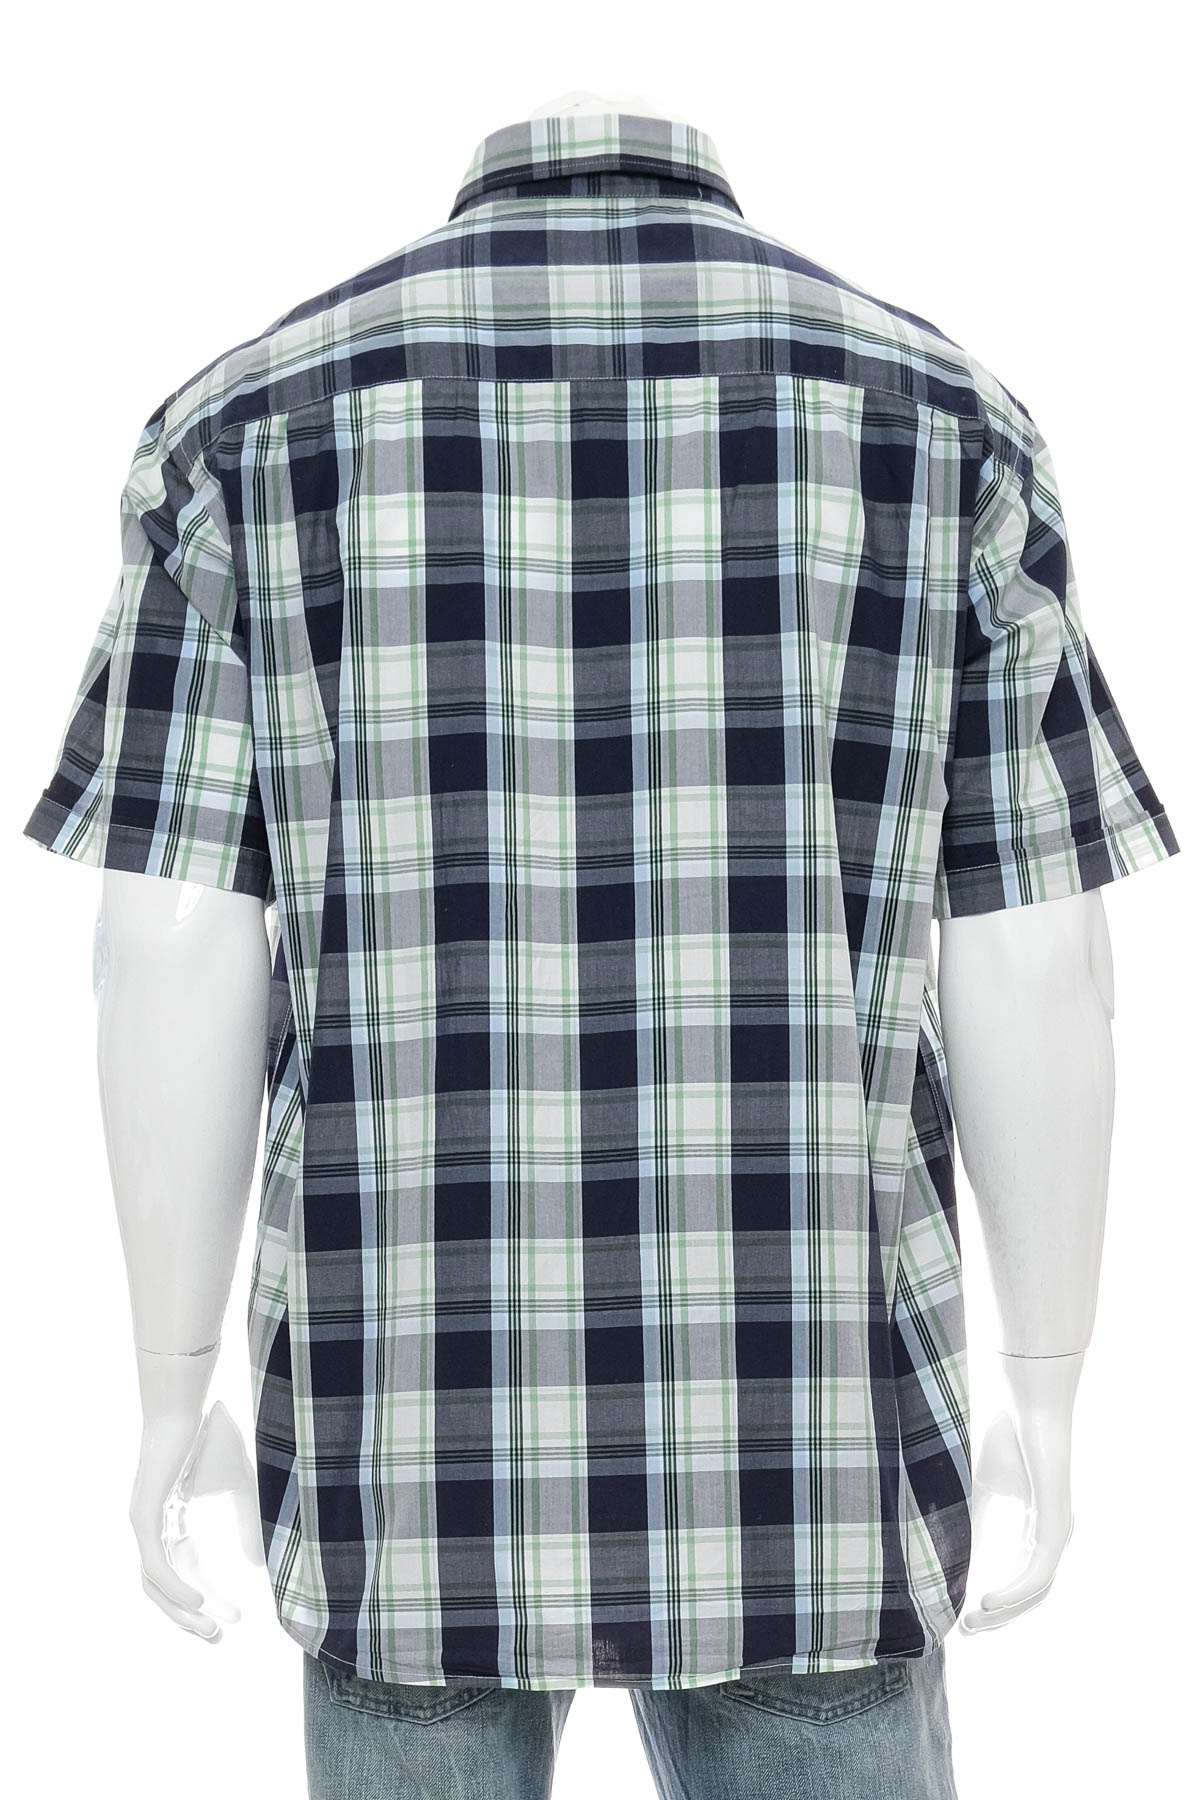 Men's shirt - A.W. Dunmore - 1